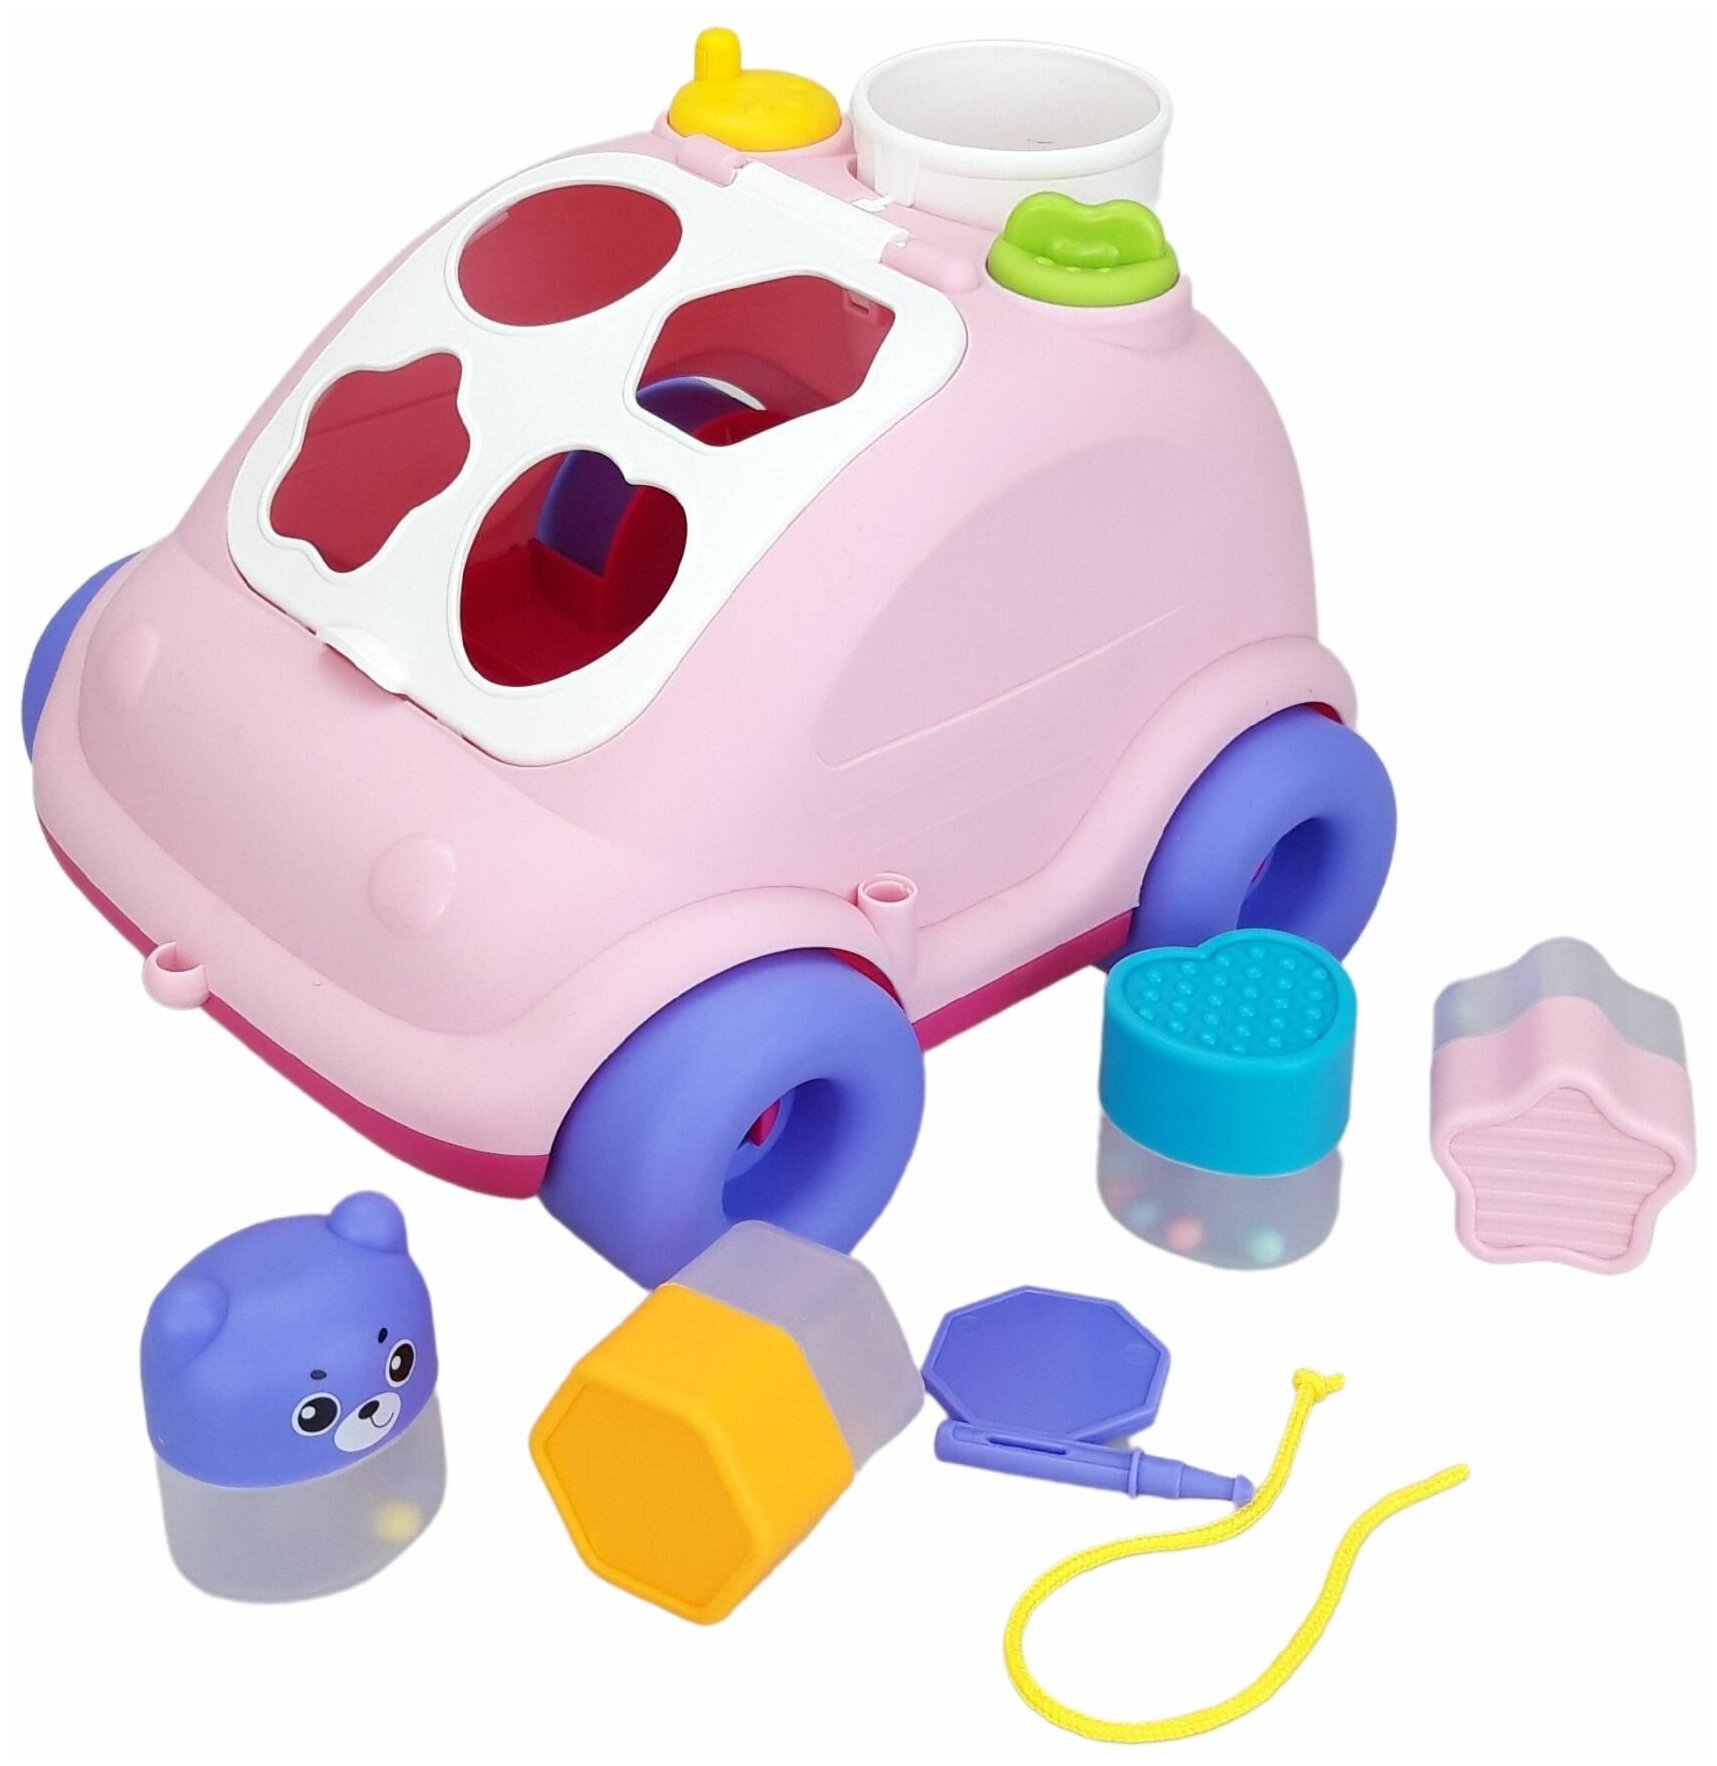 Сортер для малышей Машинка розовая развивающая игрушка от 1 года каталка с веревочкой